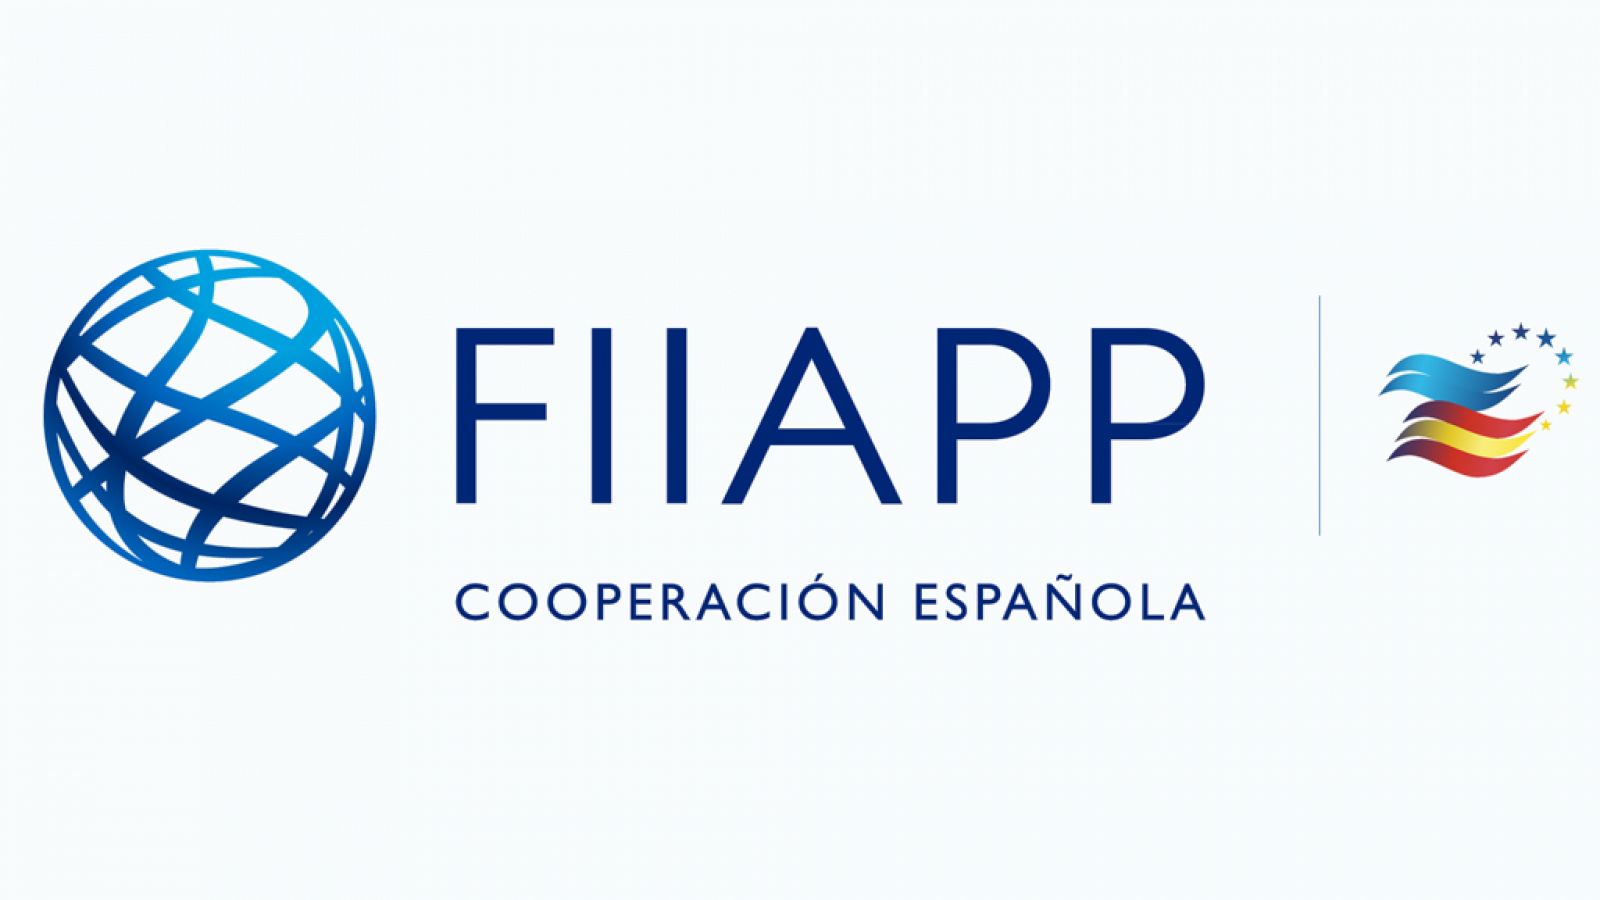  Cooperación pública en el mundo (FIIAPP) - Reforzar la justicia a través de la cooperación - 14/04/21 - escuchar ahora